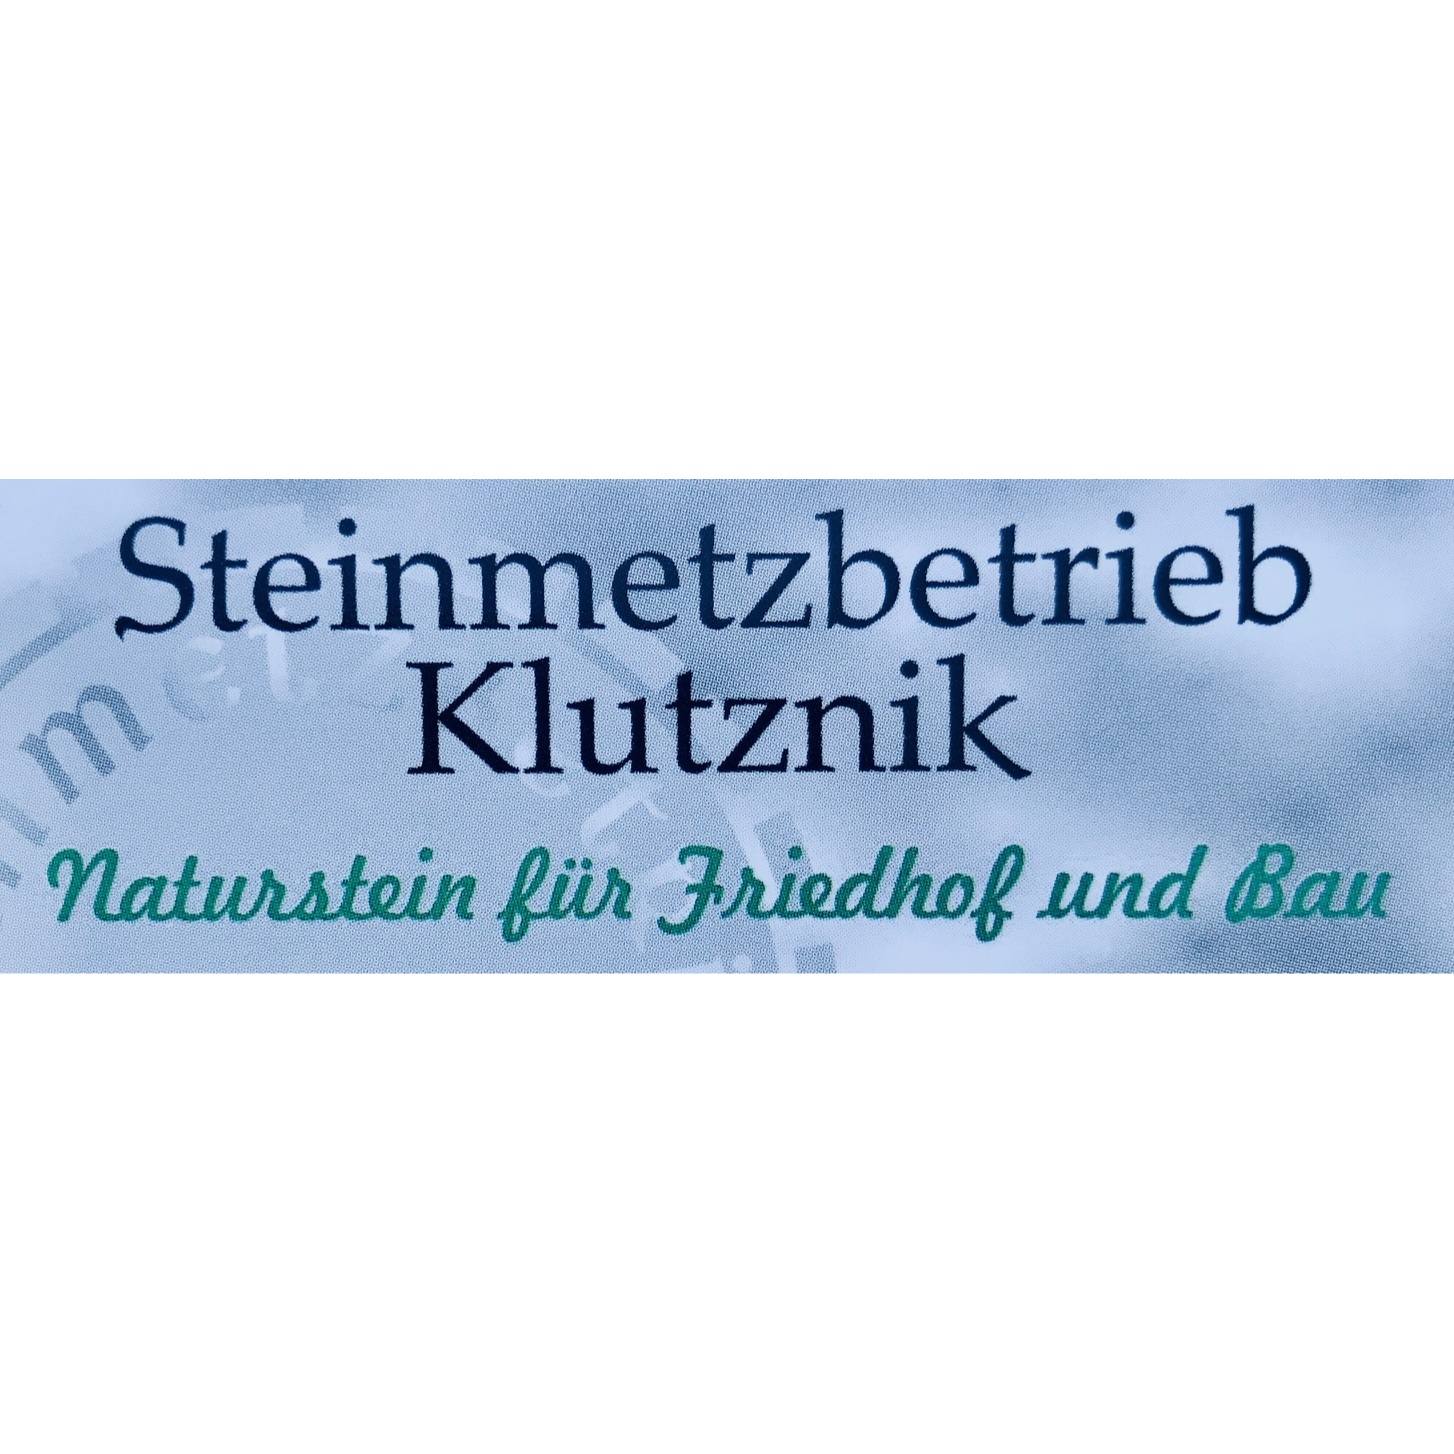 Klutznik Steinmetzbetrieb Natur- & Kunststein für Friedhof und Bau in Lutherstadt Wittenberg - Logo